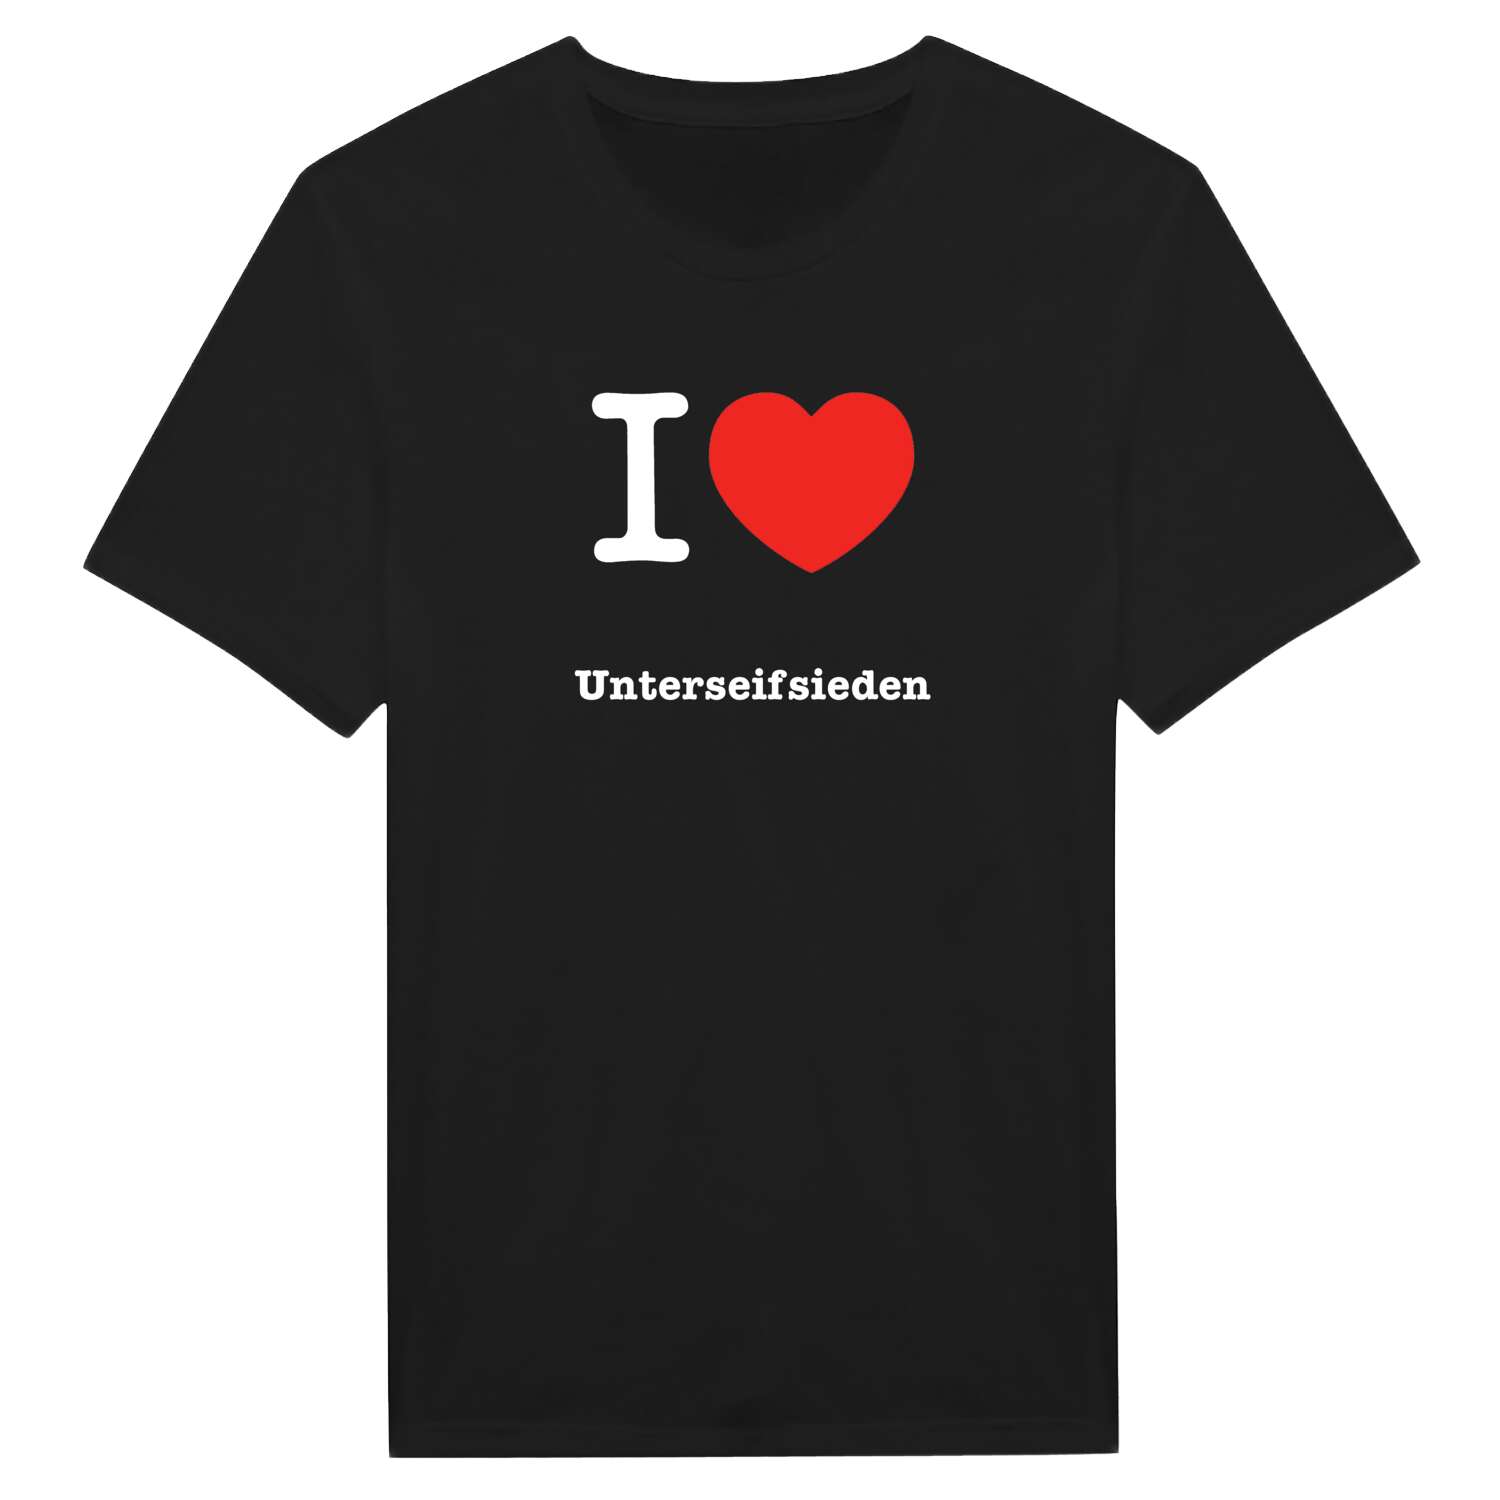 Unterseifsieden T-Shirt »I love«